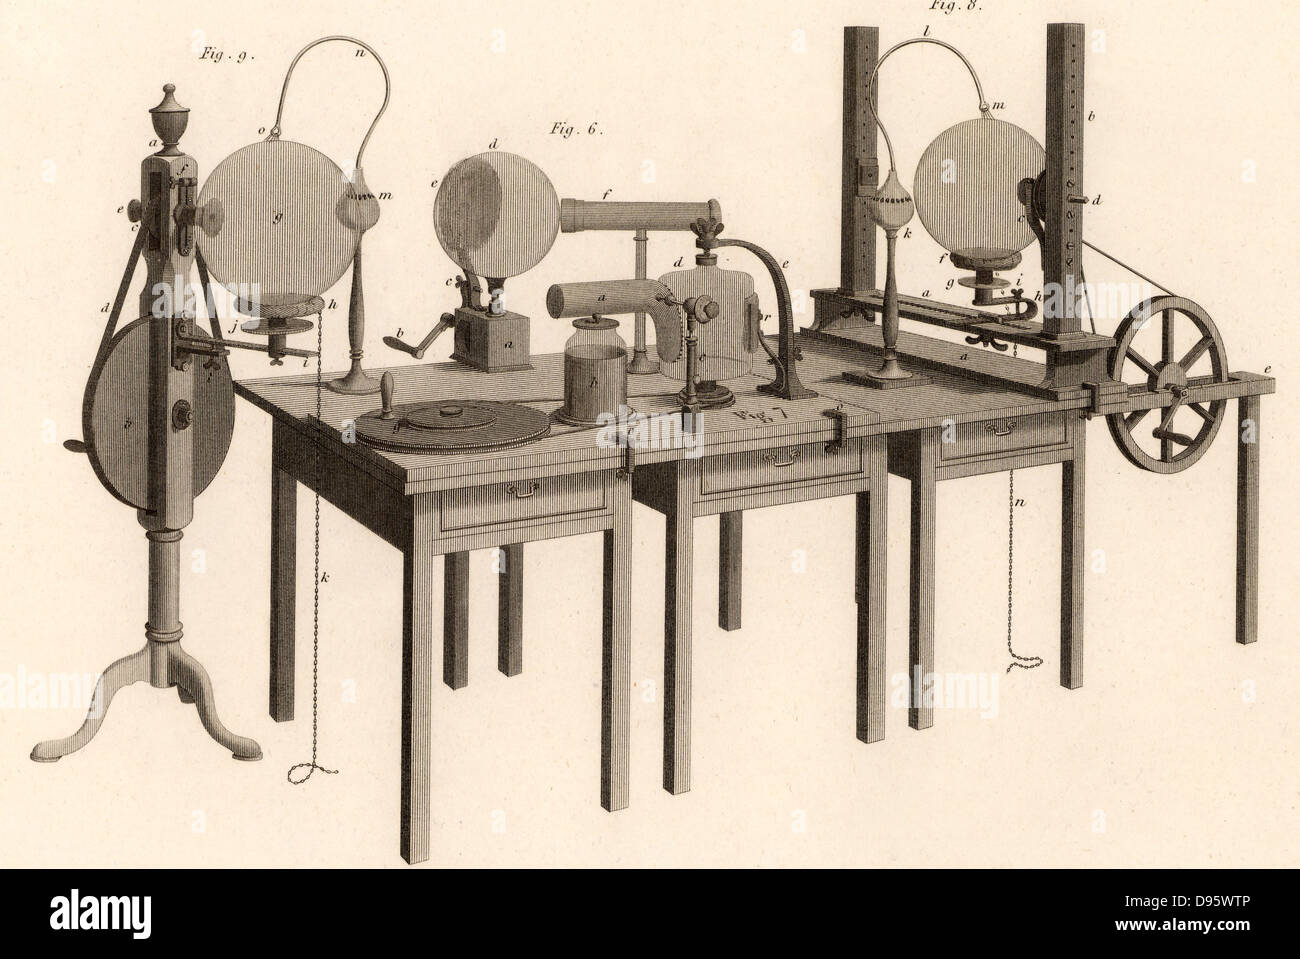 Máquina electrostática utilizado en sus experimentos por Joseph Priestley (1733-1804), químico inglés, inconformista, clérigo y maestro. Uno de los descubridores del oxígeno. Grabado de "Cyclopaedia" por Abraham Rees (Londres, 1820). Foto de stock